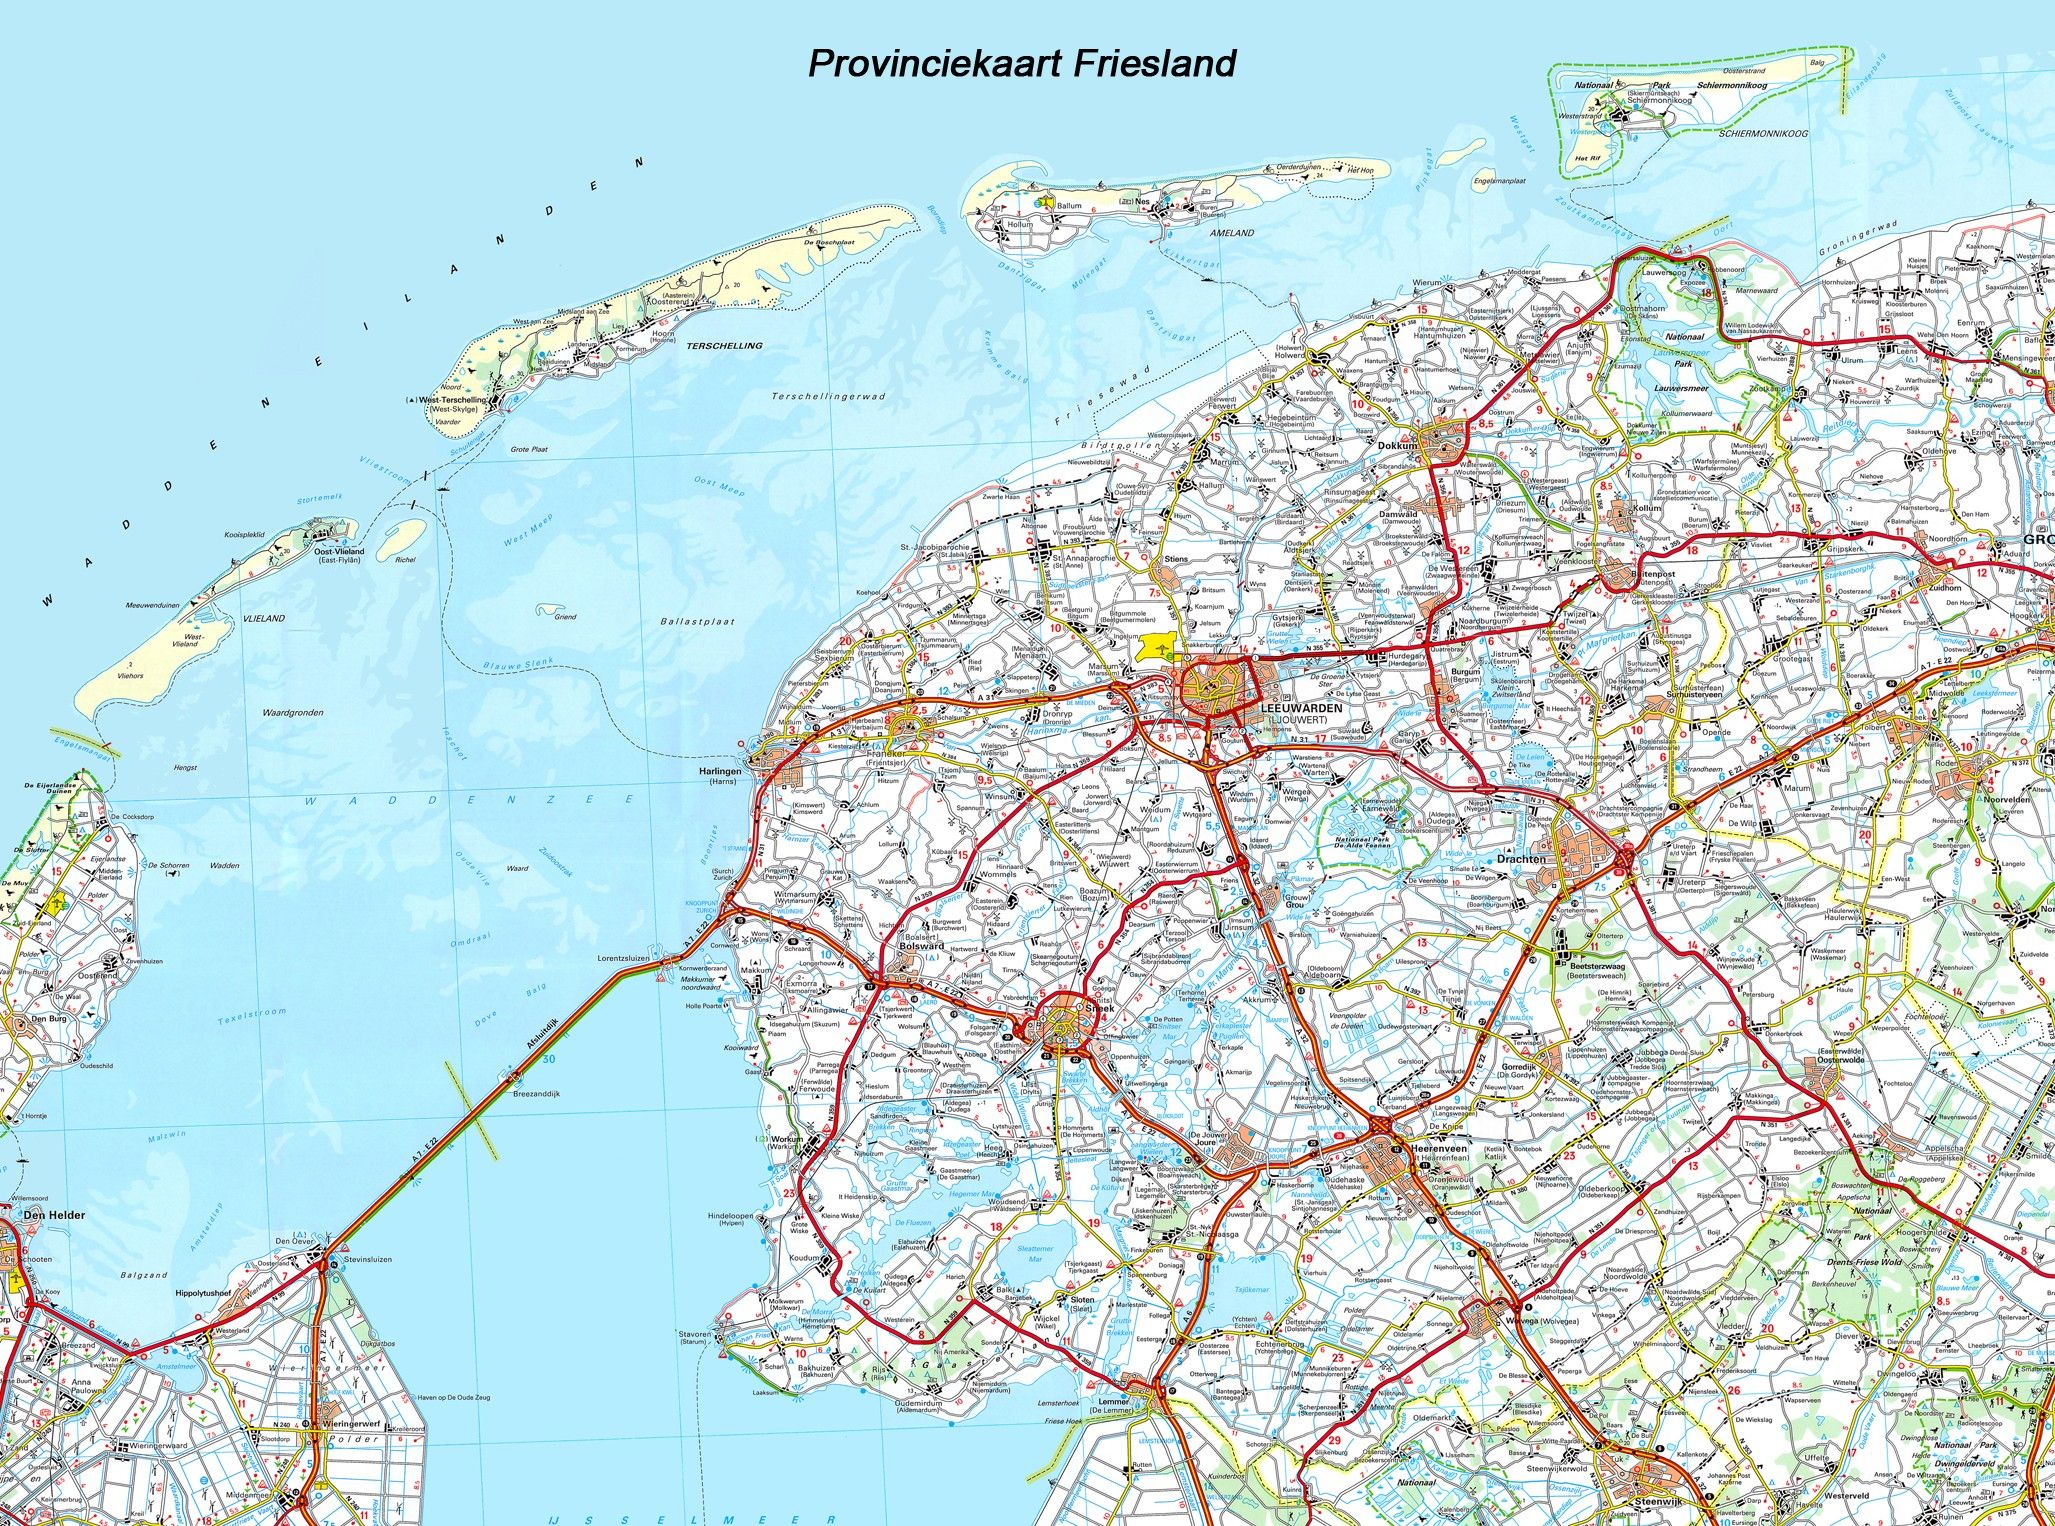 Provincie kaart Friesland 1:100.000